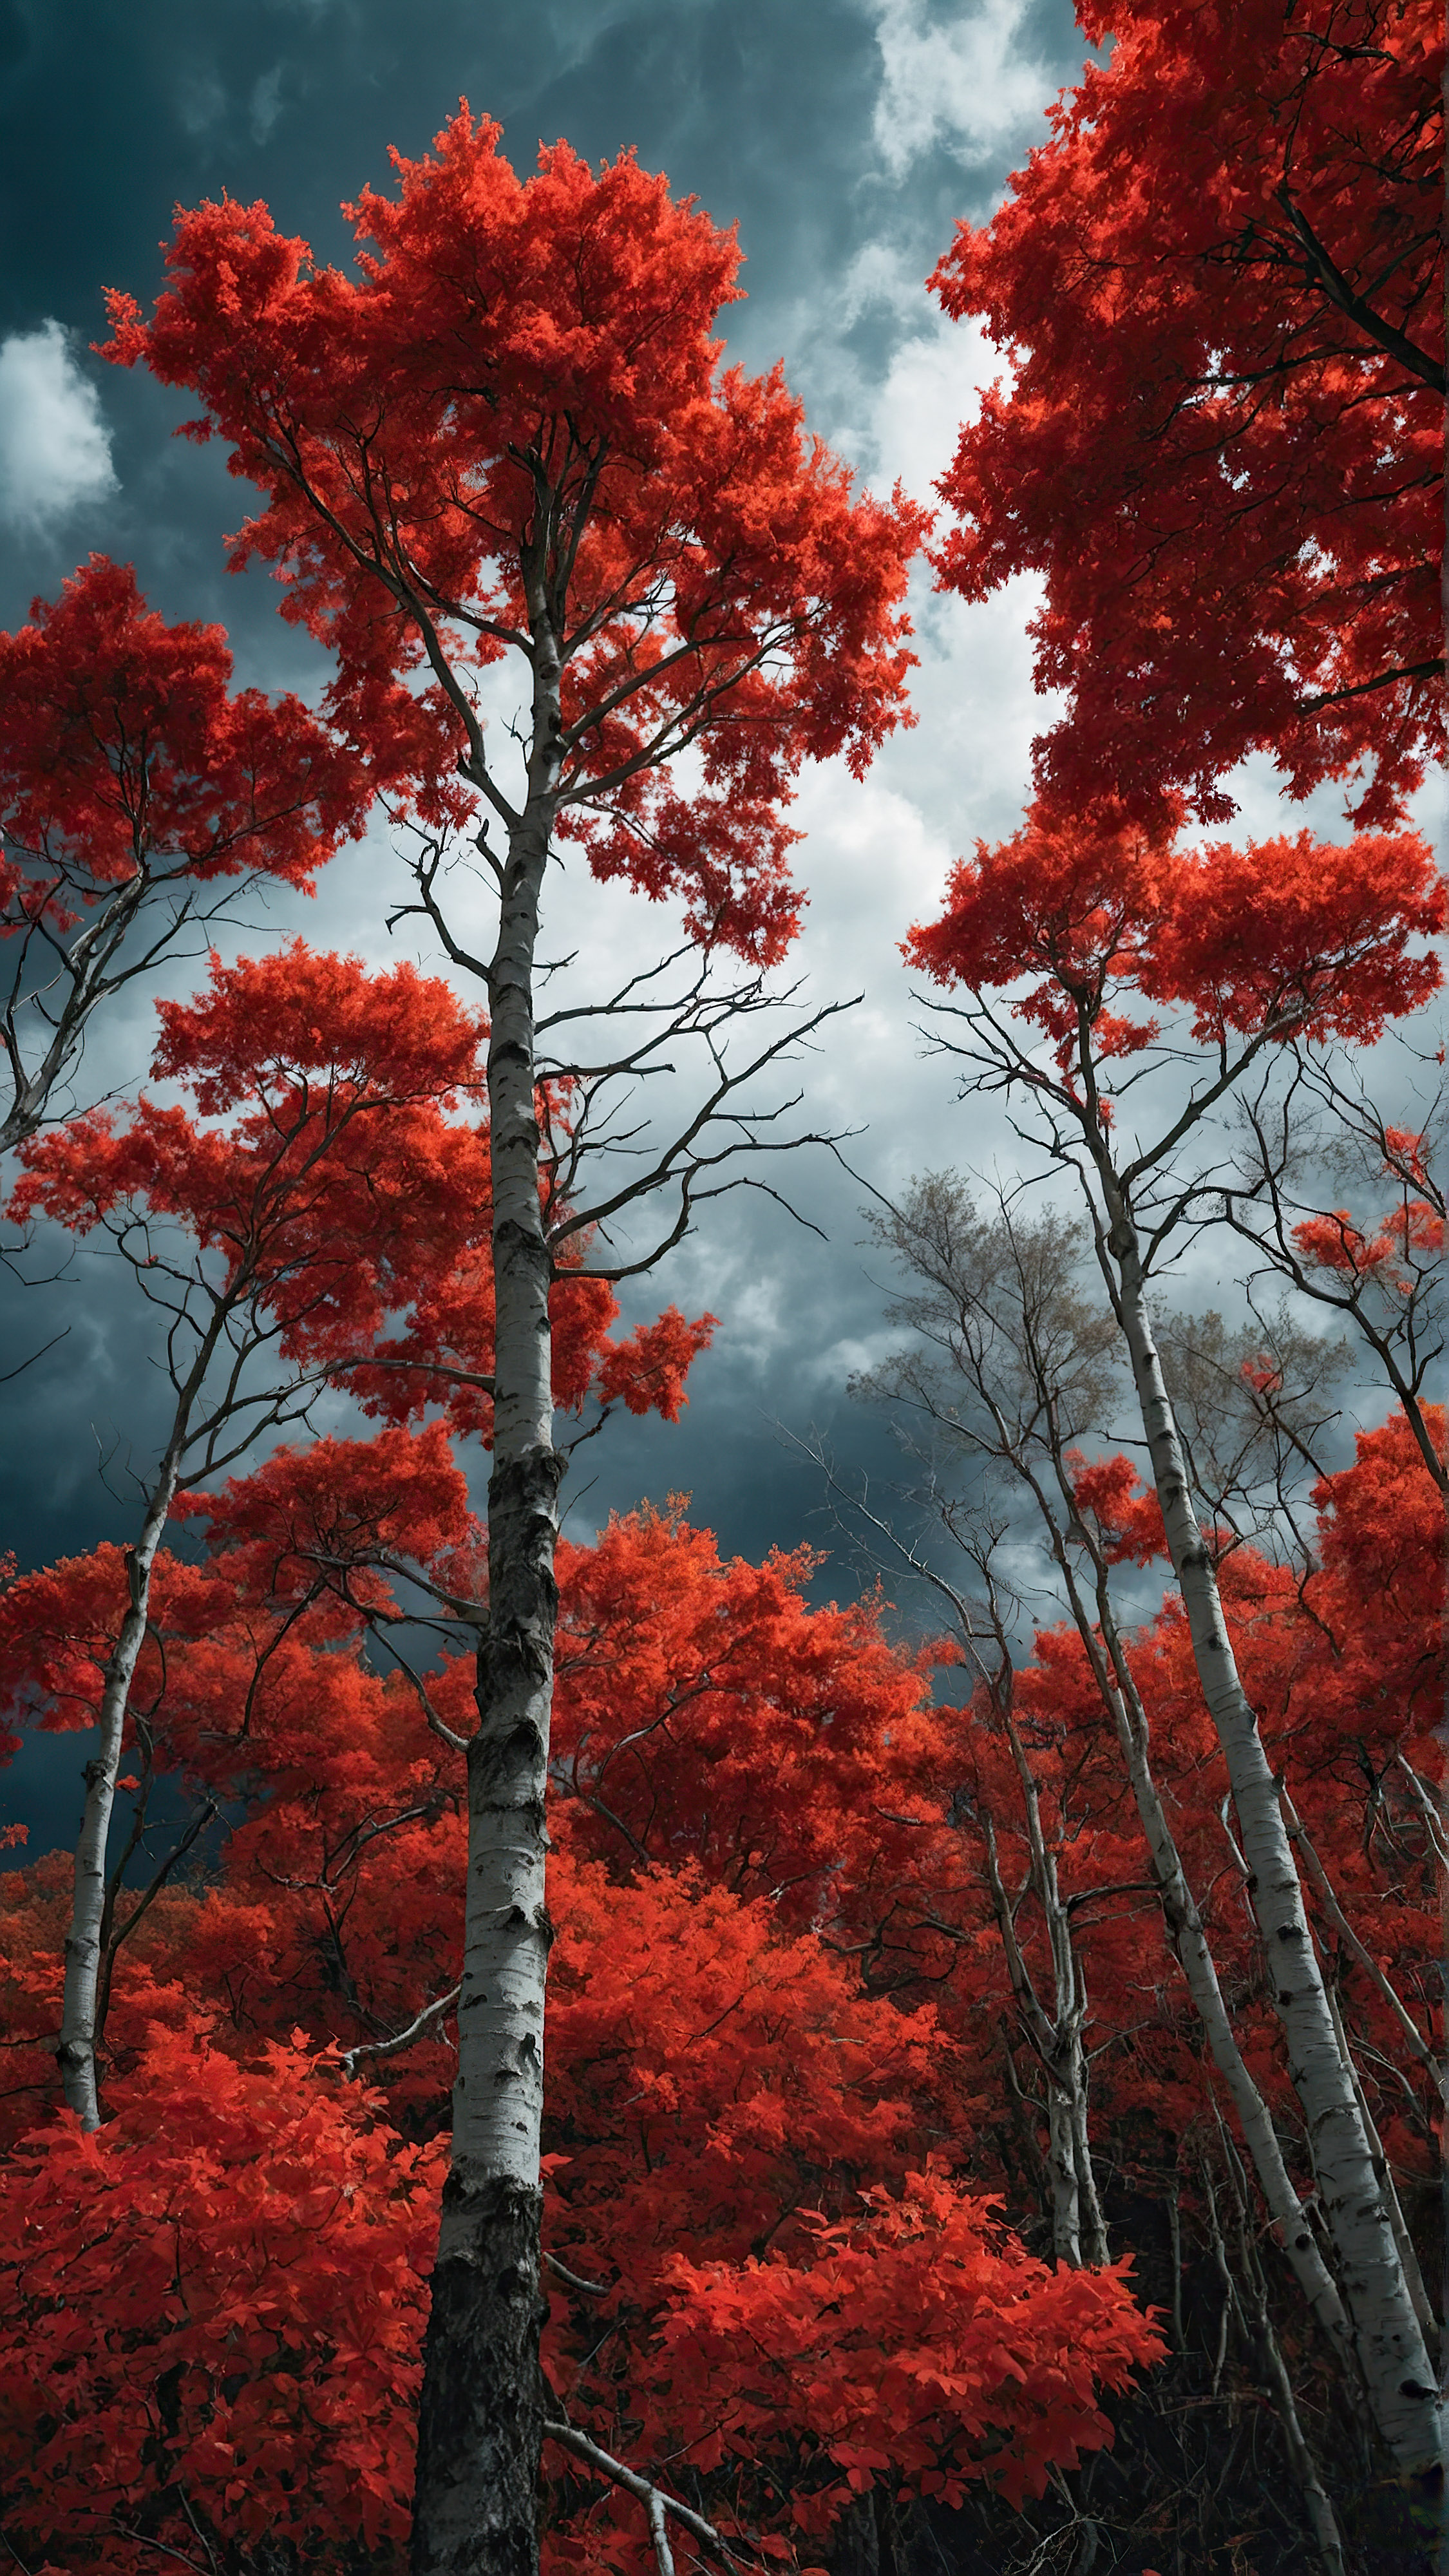 Perdez-vous dans la magie de l'automne avec notre fond d'écran iPhone, une scène surréaliste et dramatique d'arbres au feuillage rouge vif sous un ciel sombre avec des nuages blancs et moelleux.